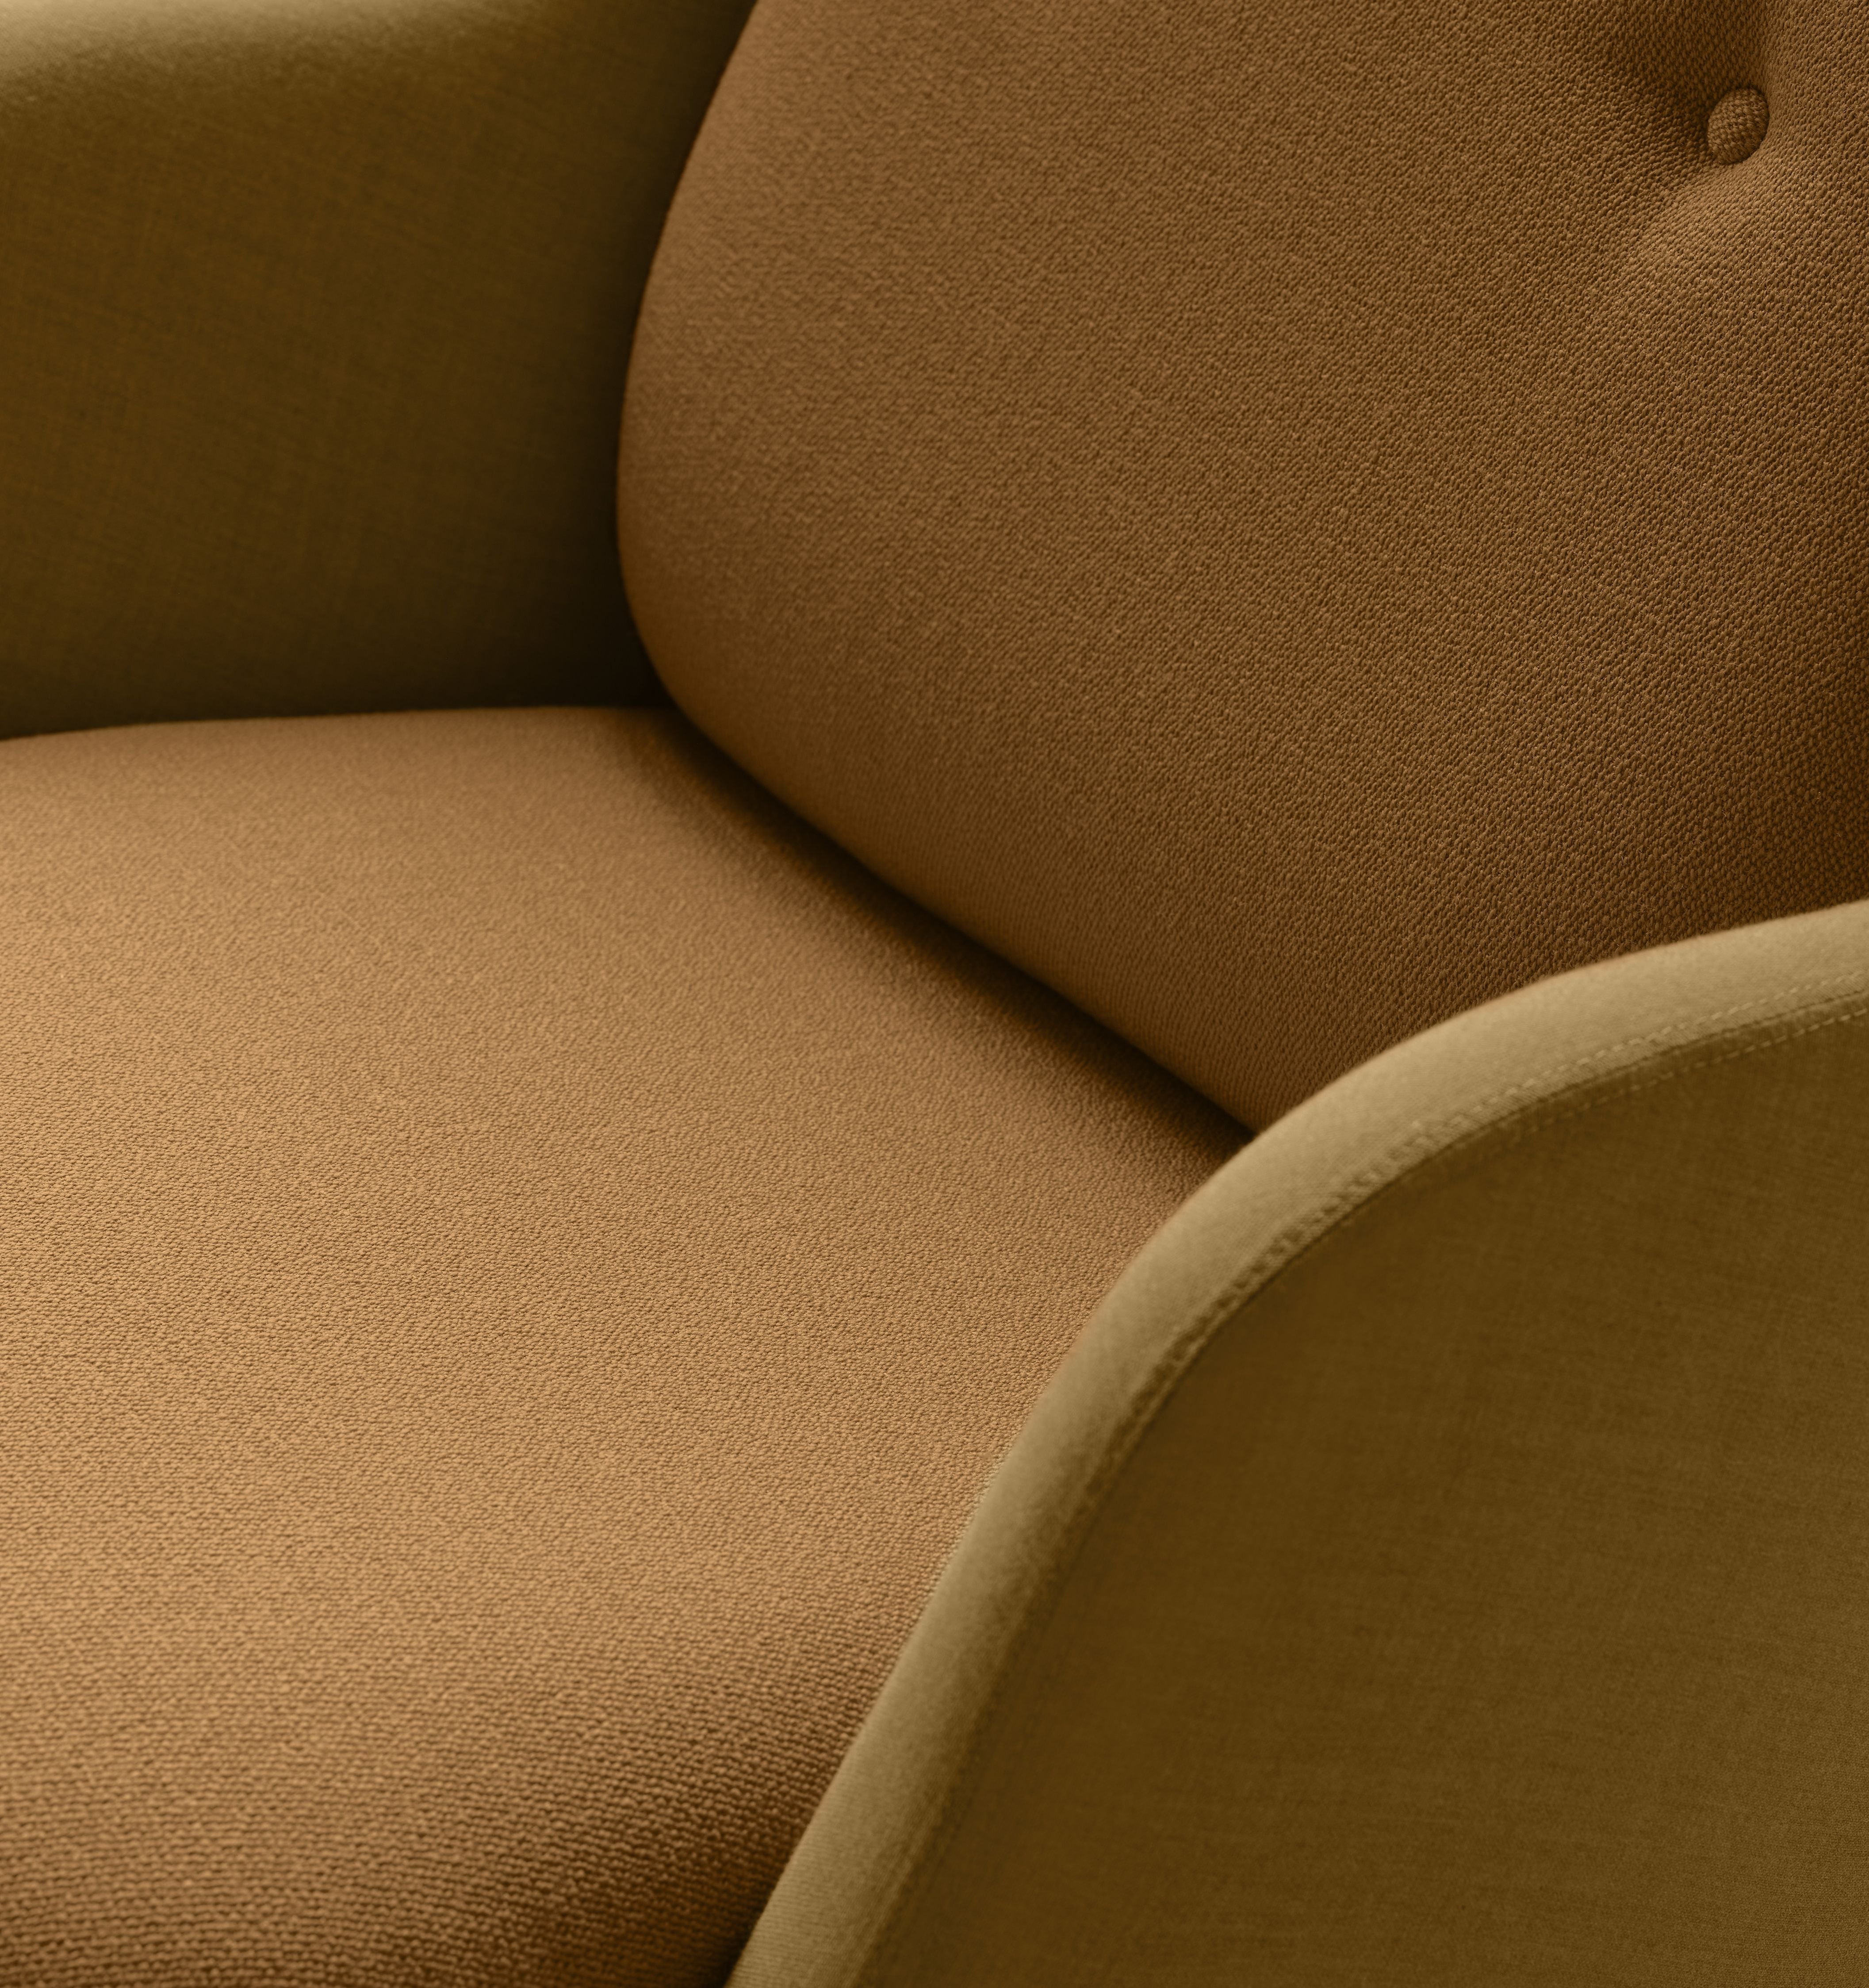 弗里茨·汉森·弗里休息室椅铝，烧黄色